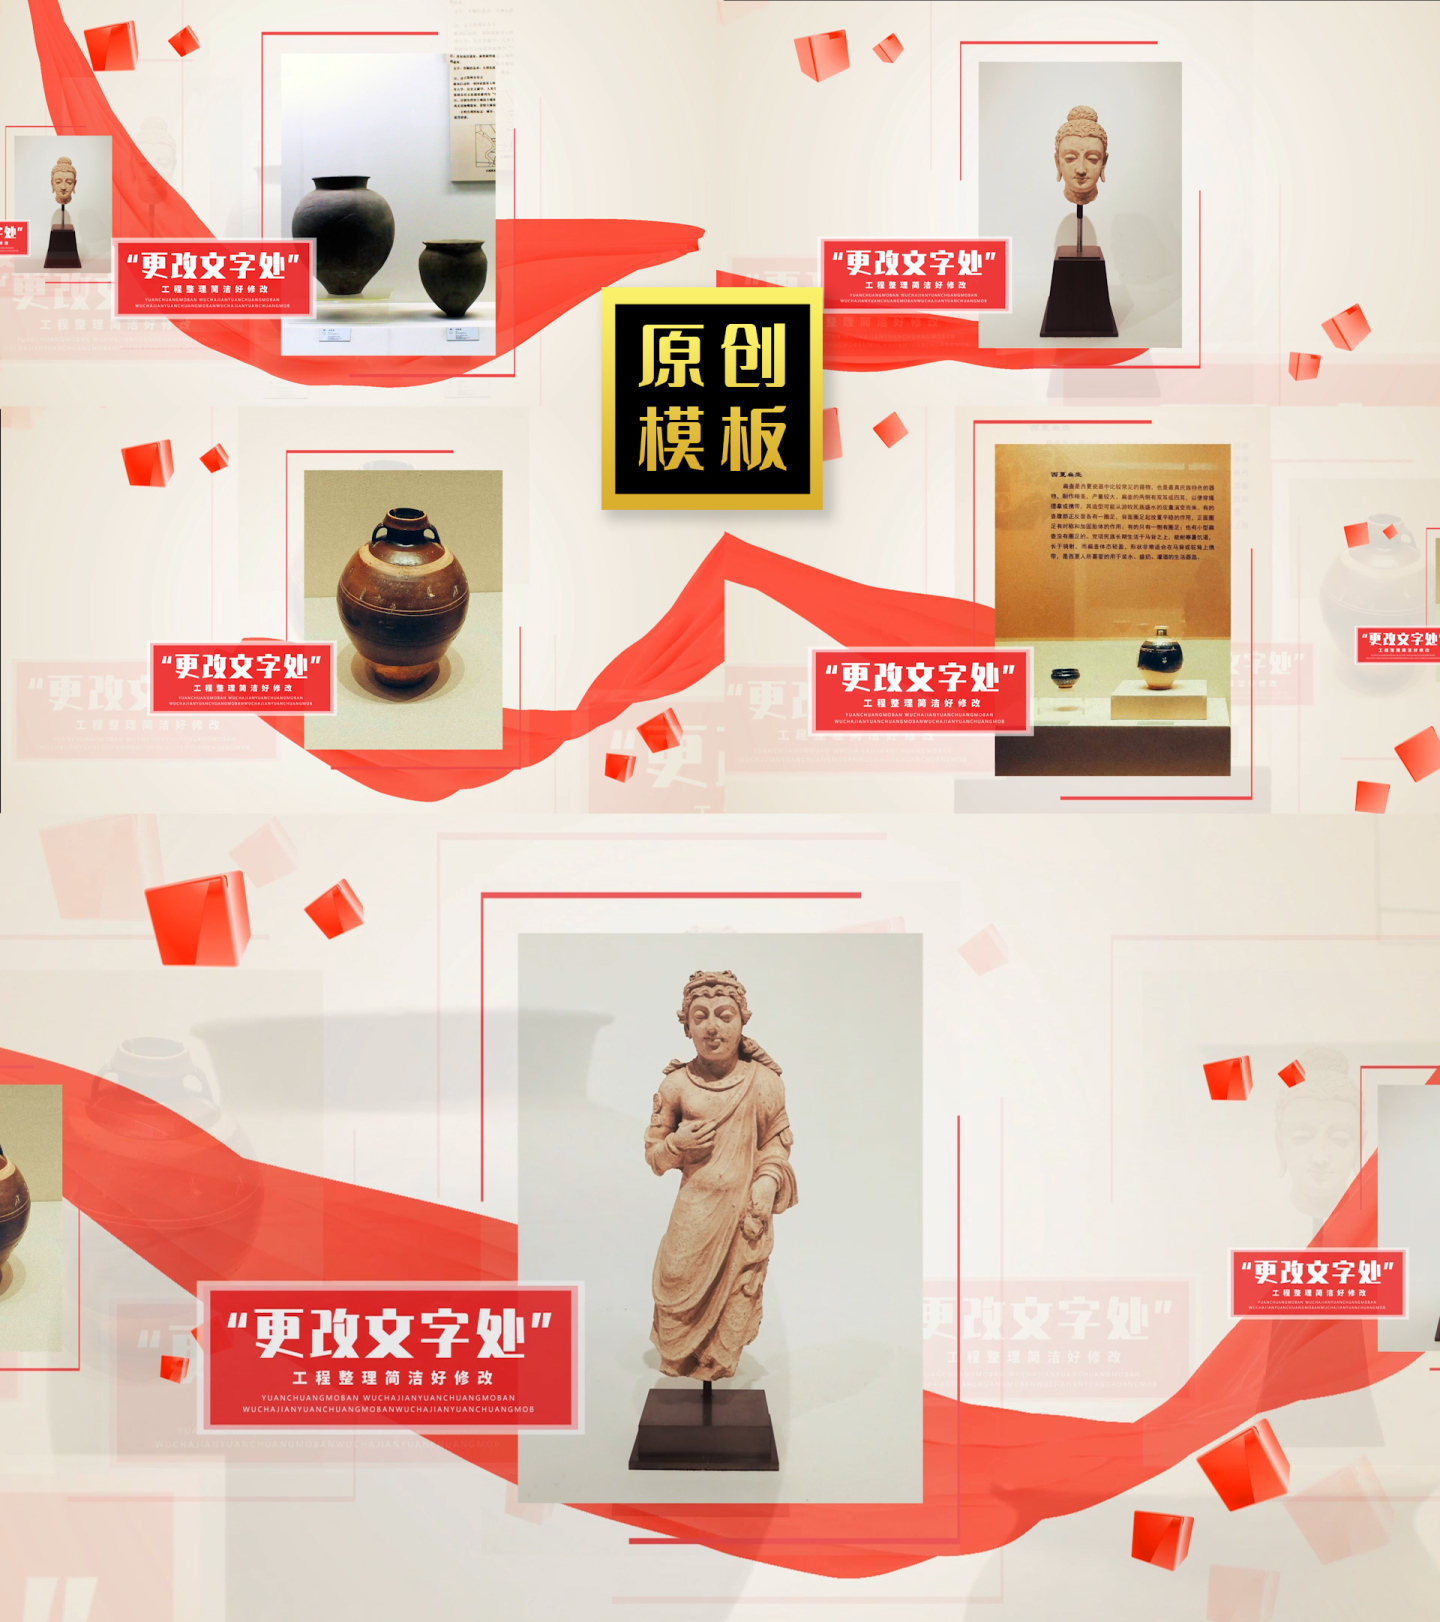 48图历史文物国宝图文展示照片包装长图文